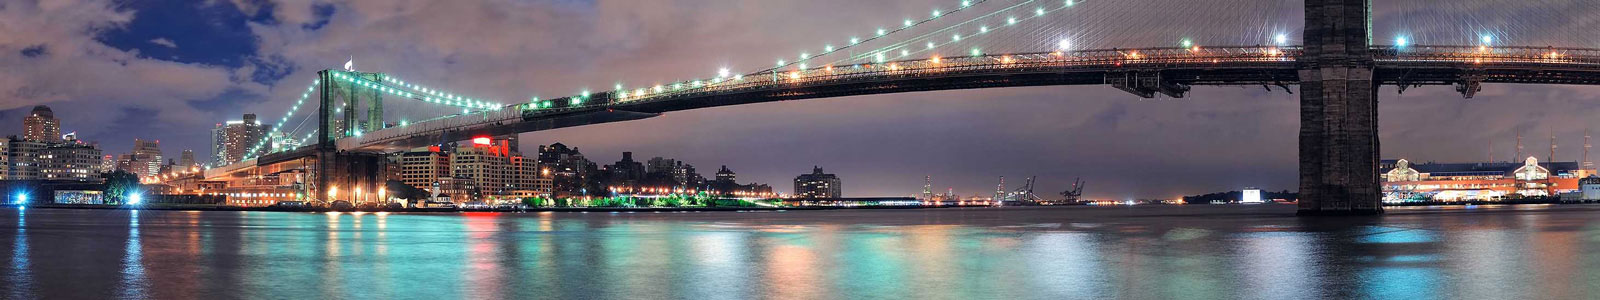 №3176 - Бруклинский мост ночью